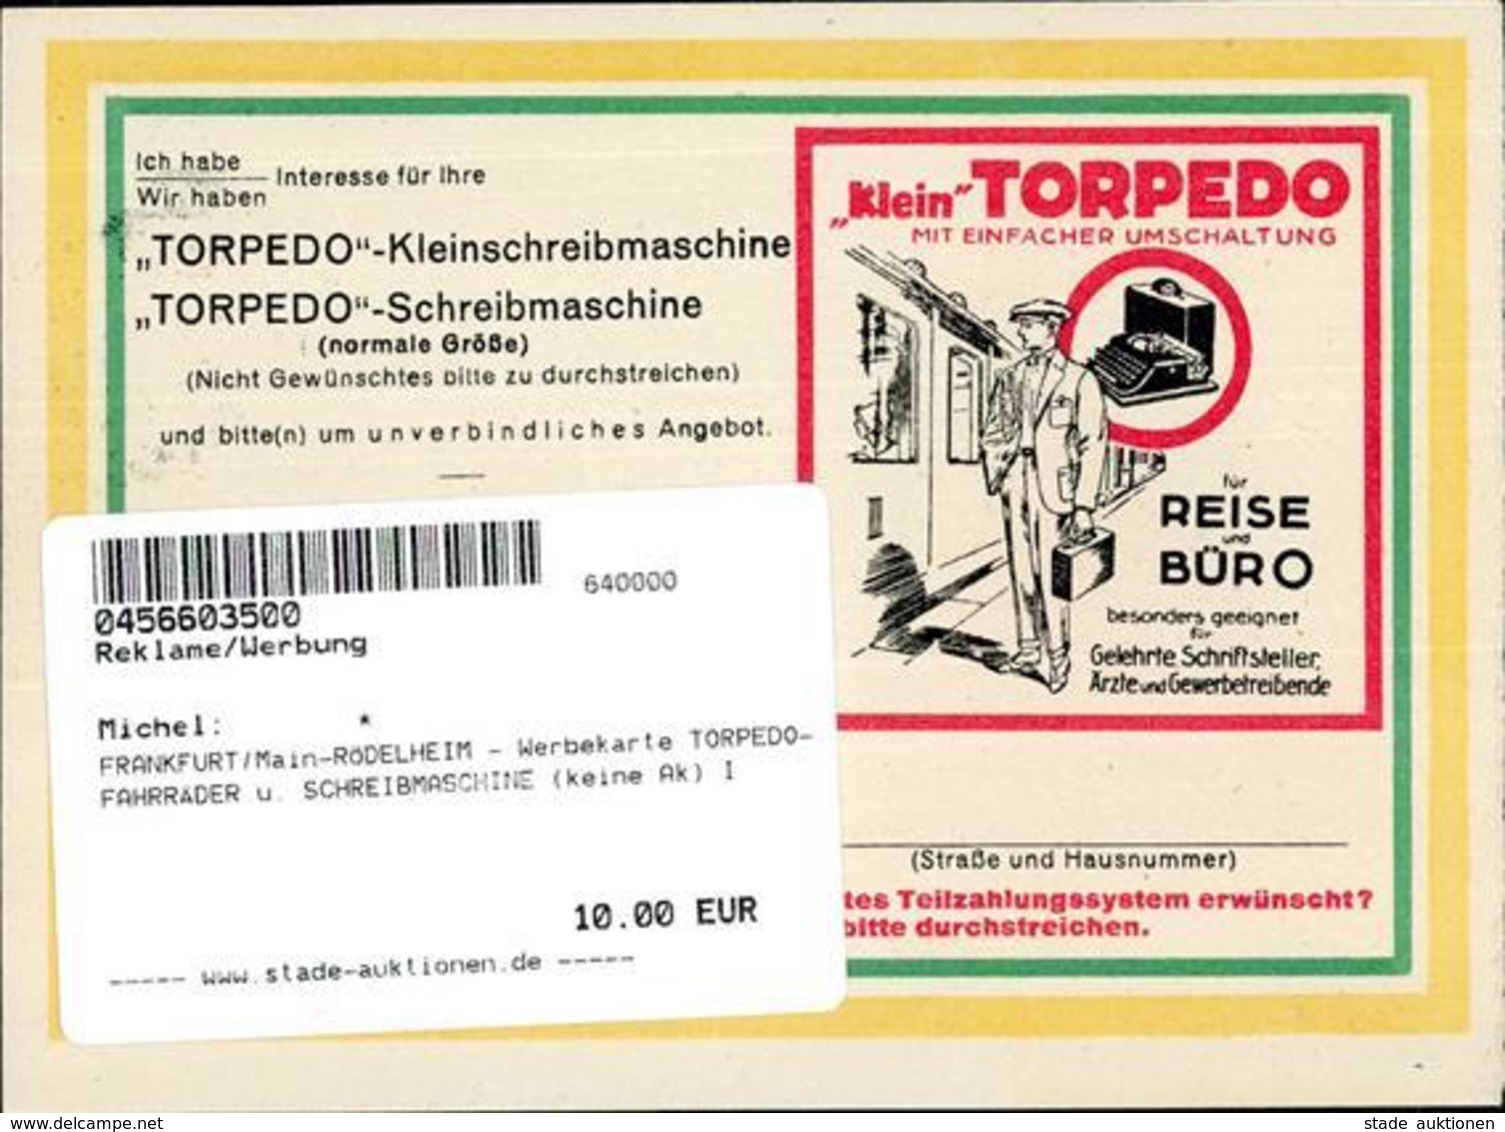 FRANKFURT/Main-RÖDELHEIM - Werbekarte TORPEDO-FAHRRÄDER U. SCHREIBMASCHINE (keine Ak) I - Advertising